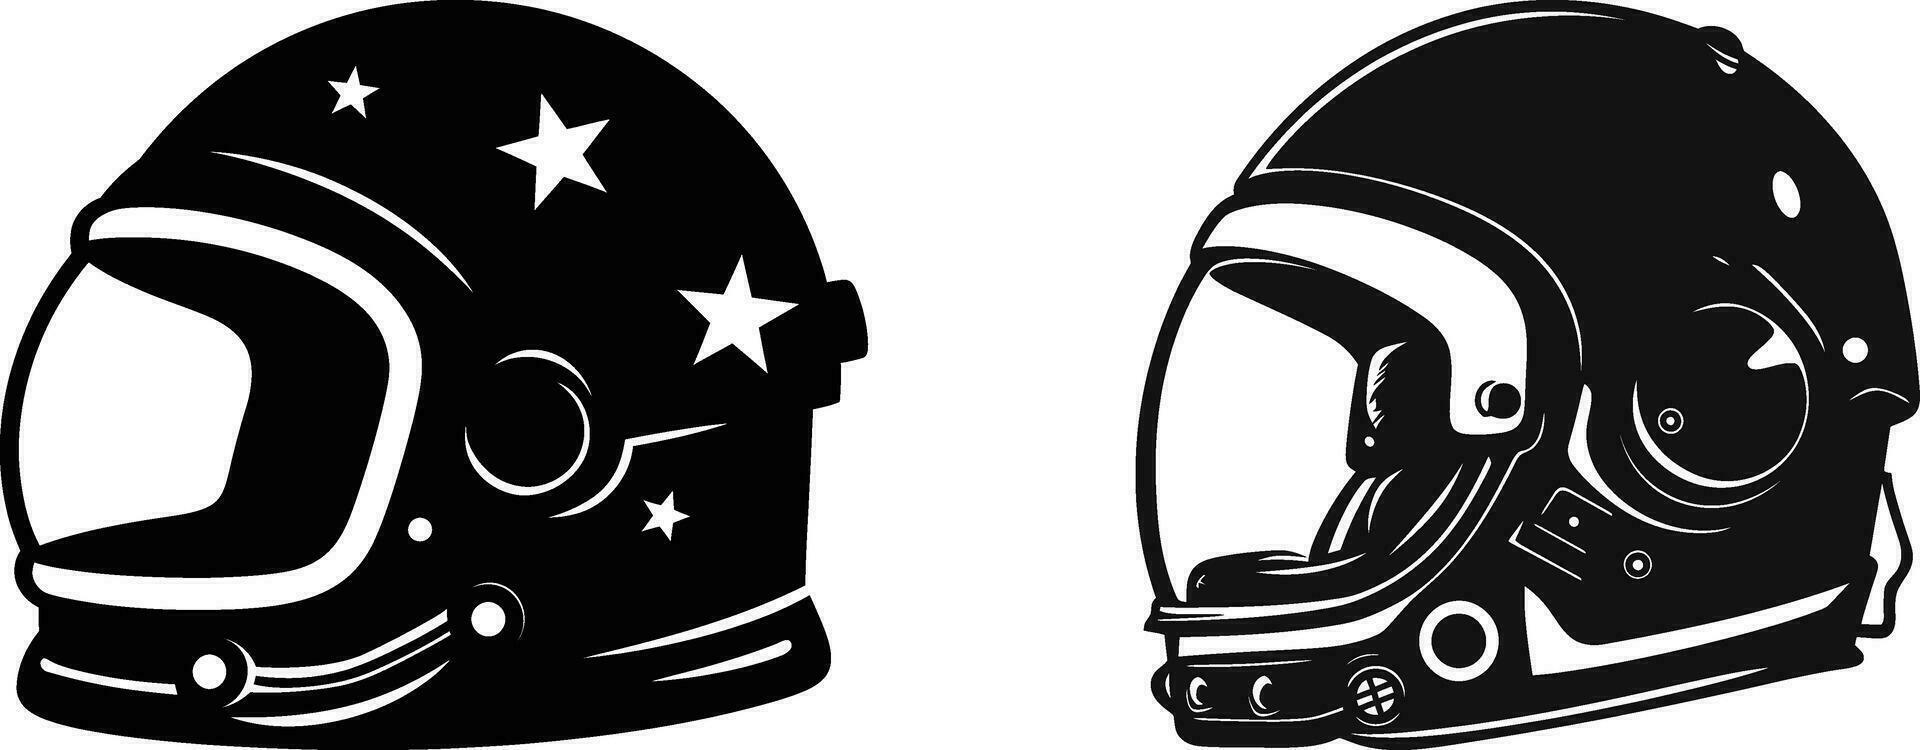 silhouette di il stelle astronauta casco design vettore